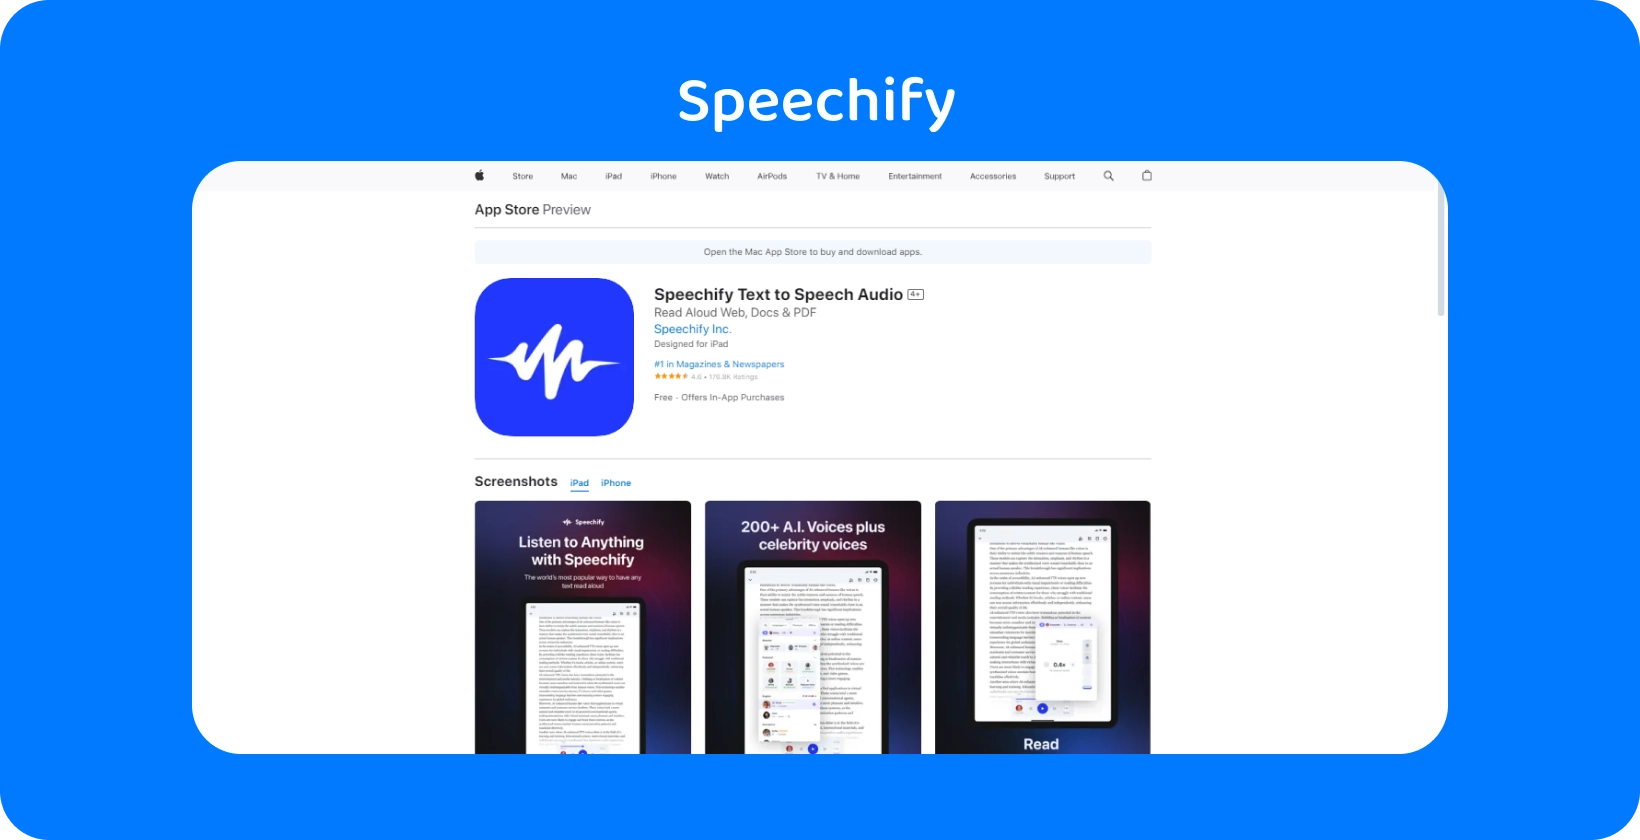 Приложение Speechify в App Store, отображающее функции преобразования текста в речь с различными голосовыми параметрами.